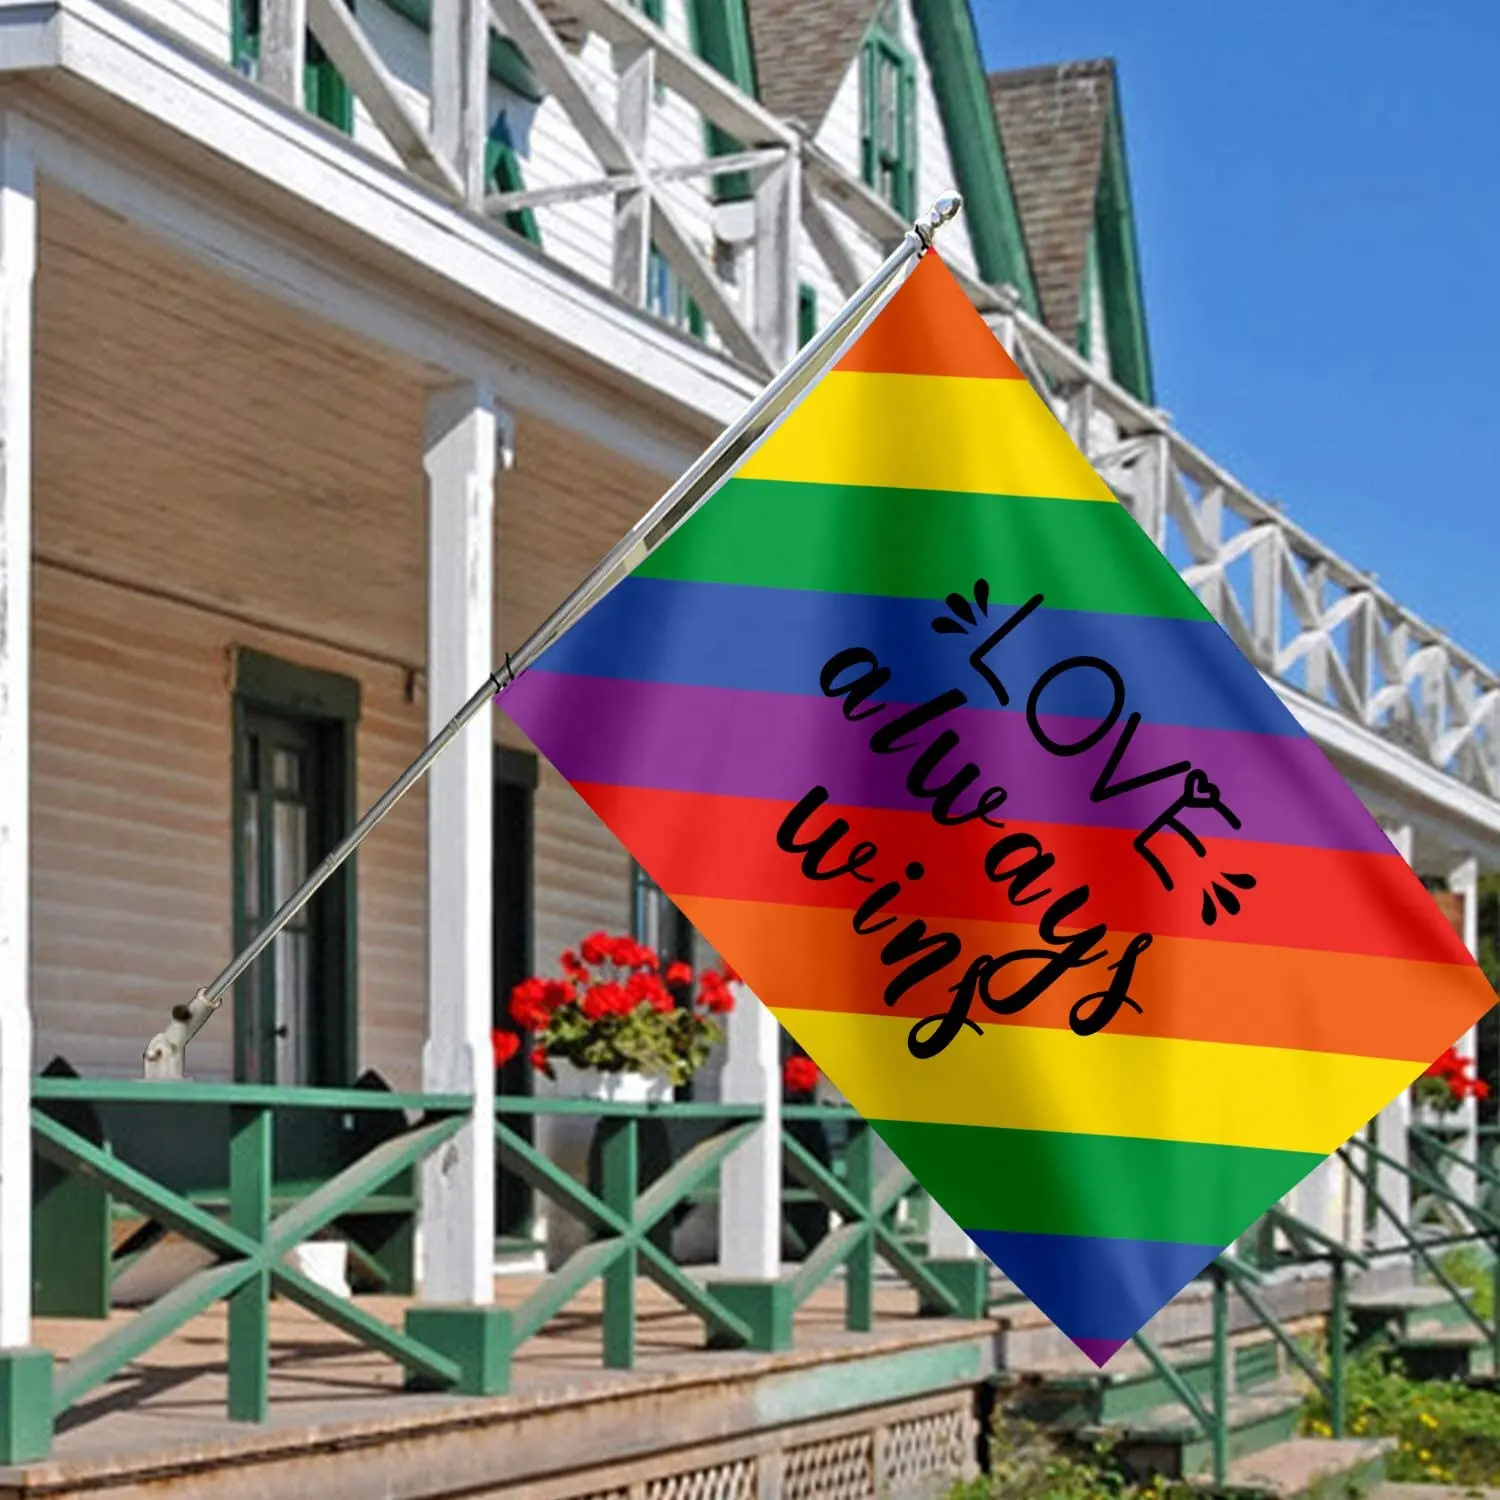 Nhà Máy Bán buôn 3X5FT Polyester biểu ngữ bền niềm tự hào lgbtq đầy màu sắc lesbian 90x150cm Polyester gay Malaysia cầu vồng cờ